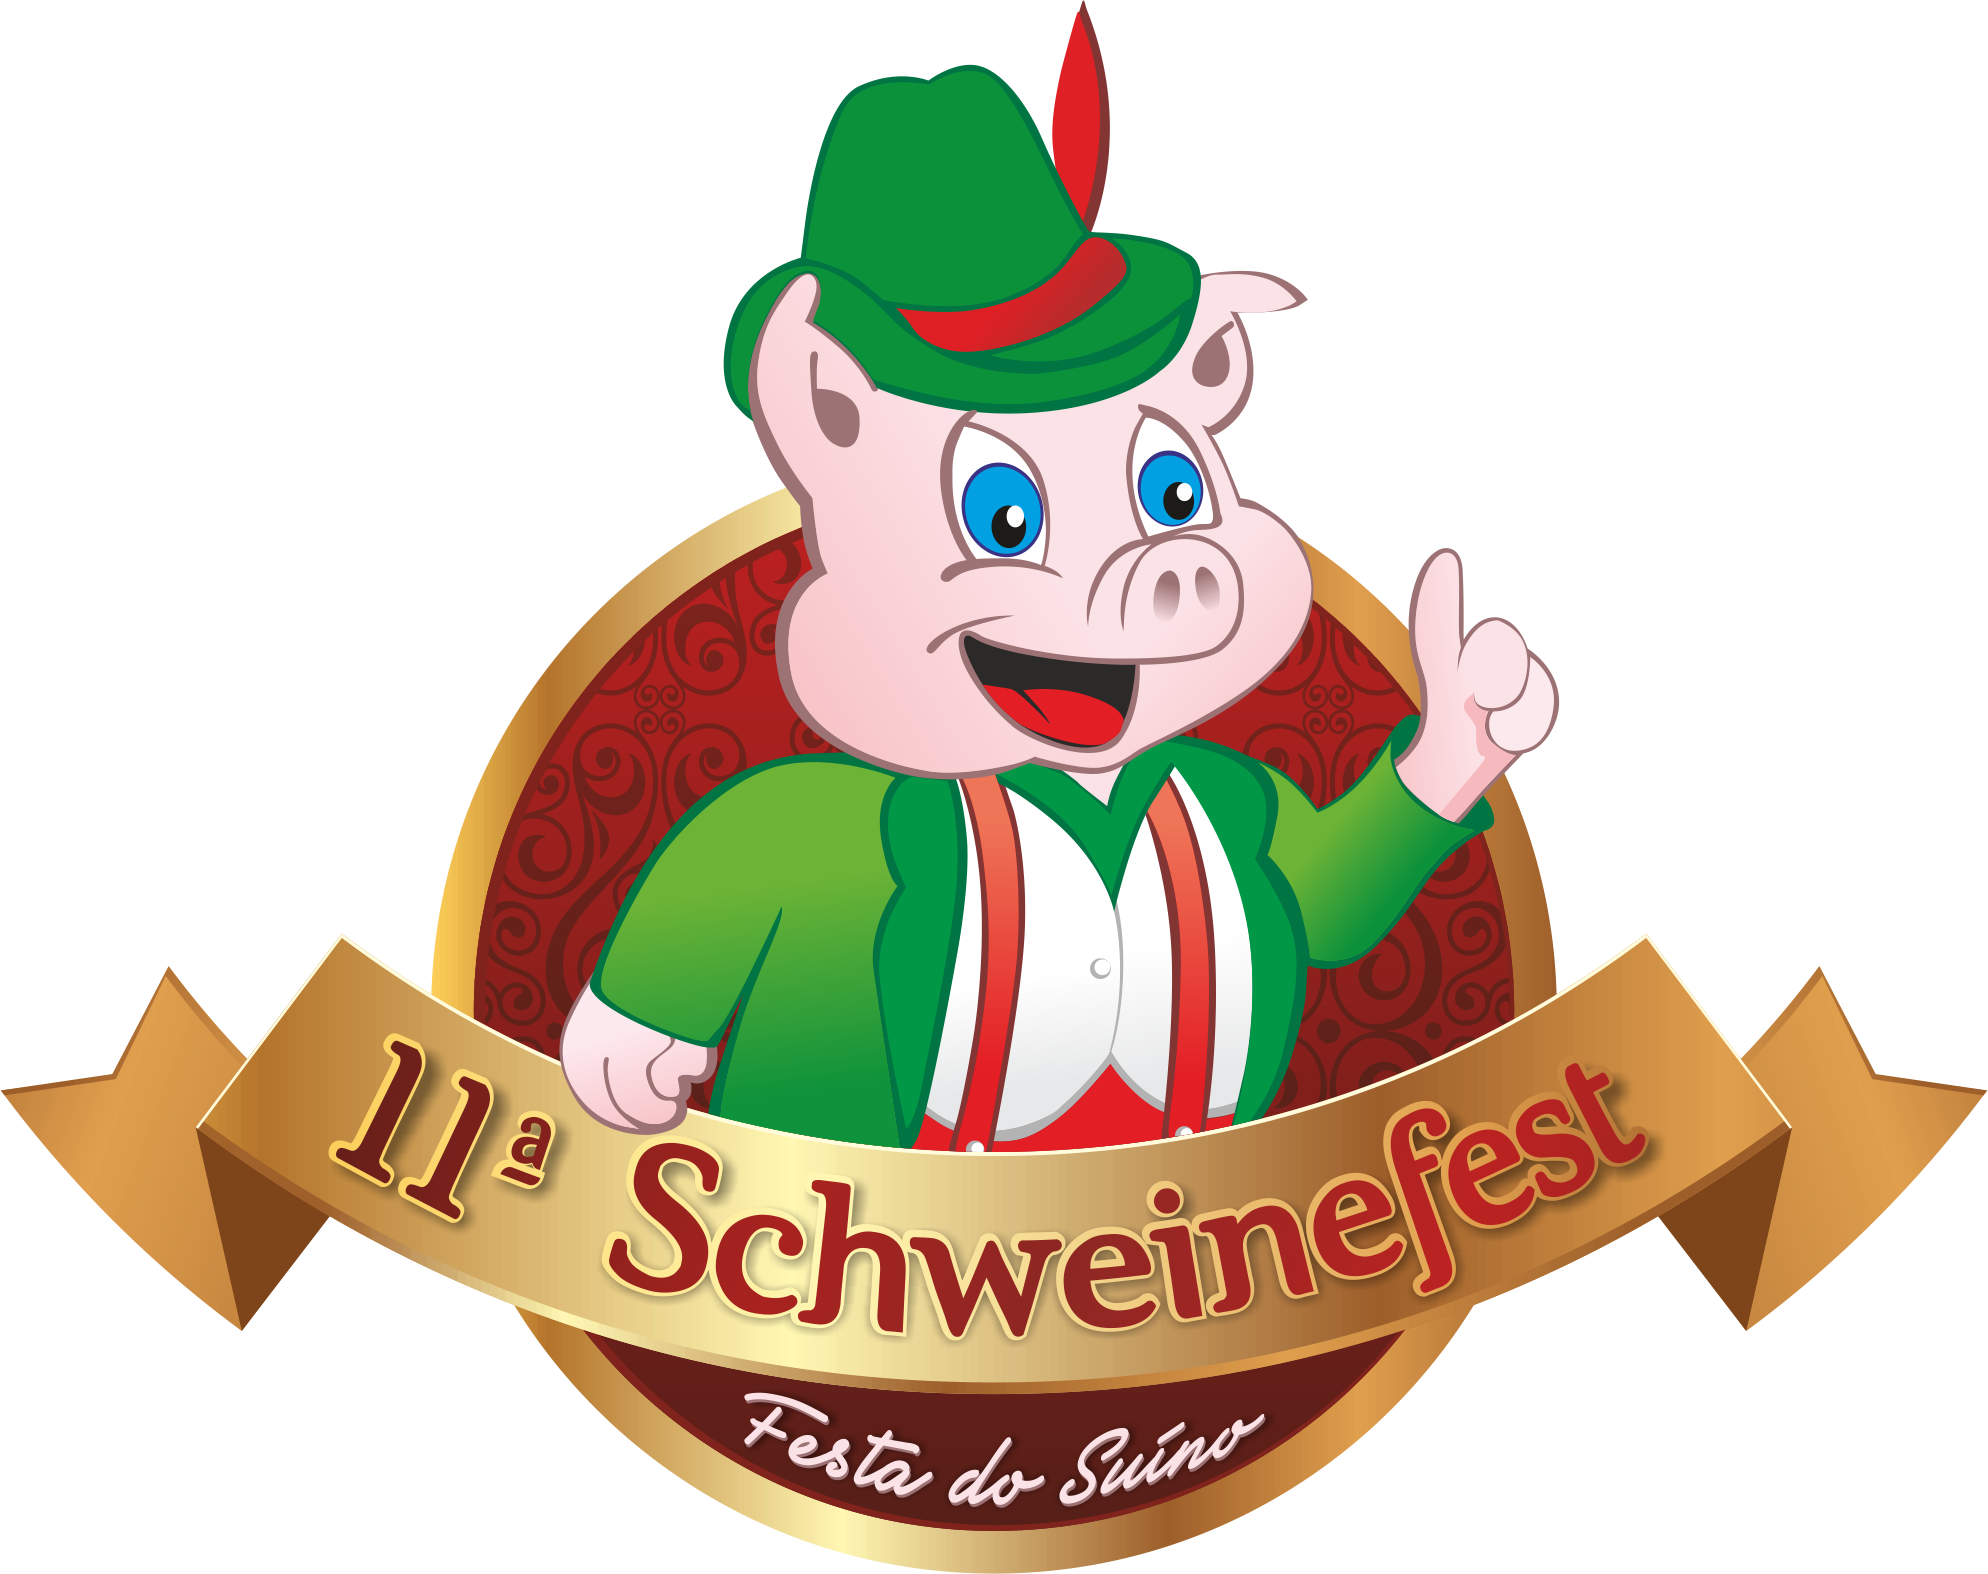 11ª Schweinefest será realizada no dia 22 de agosto